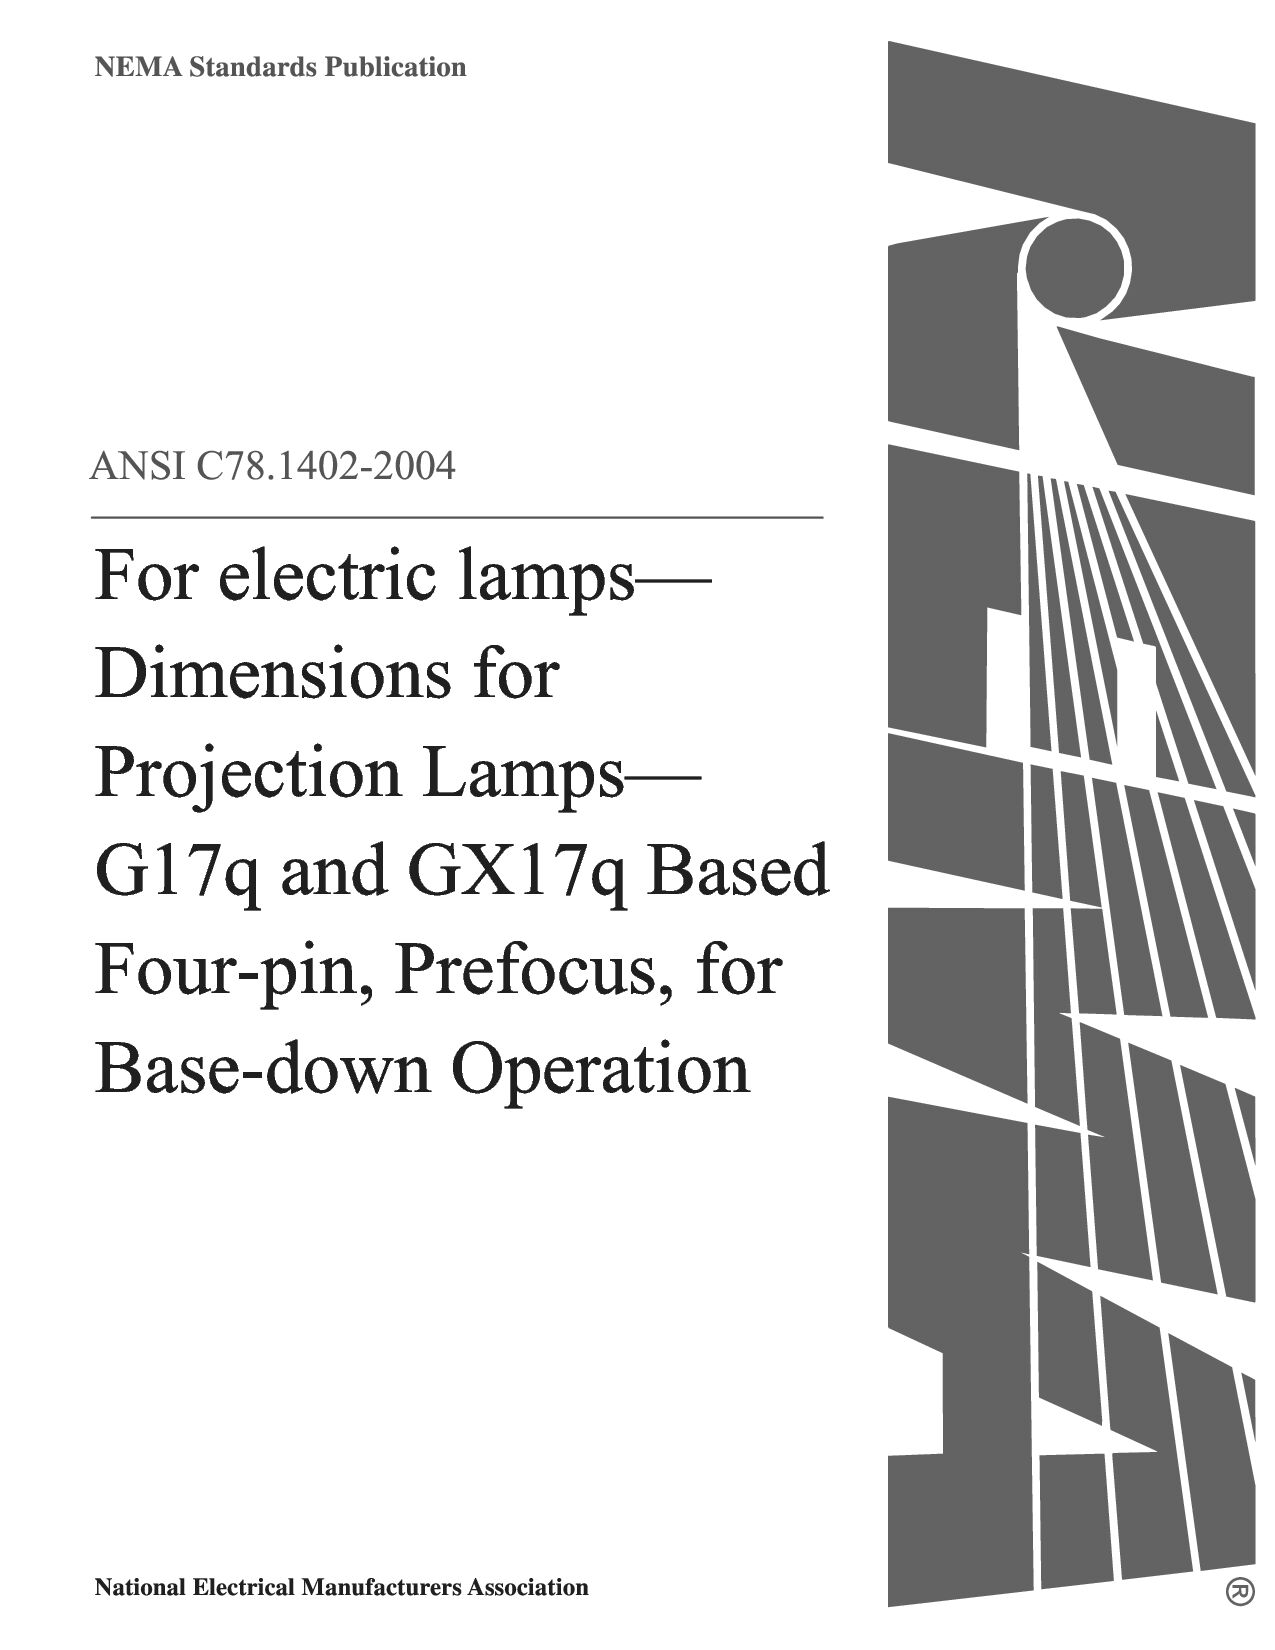 ANSI C78.1402-2004